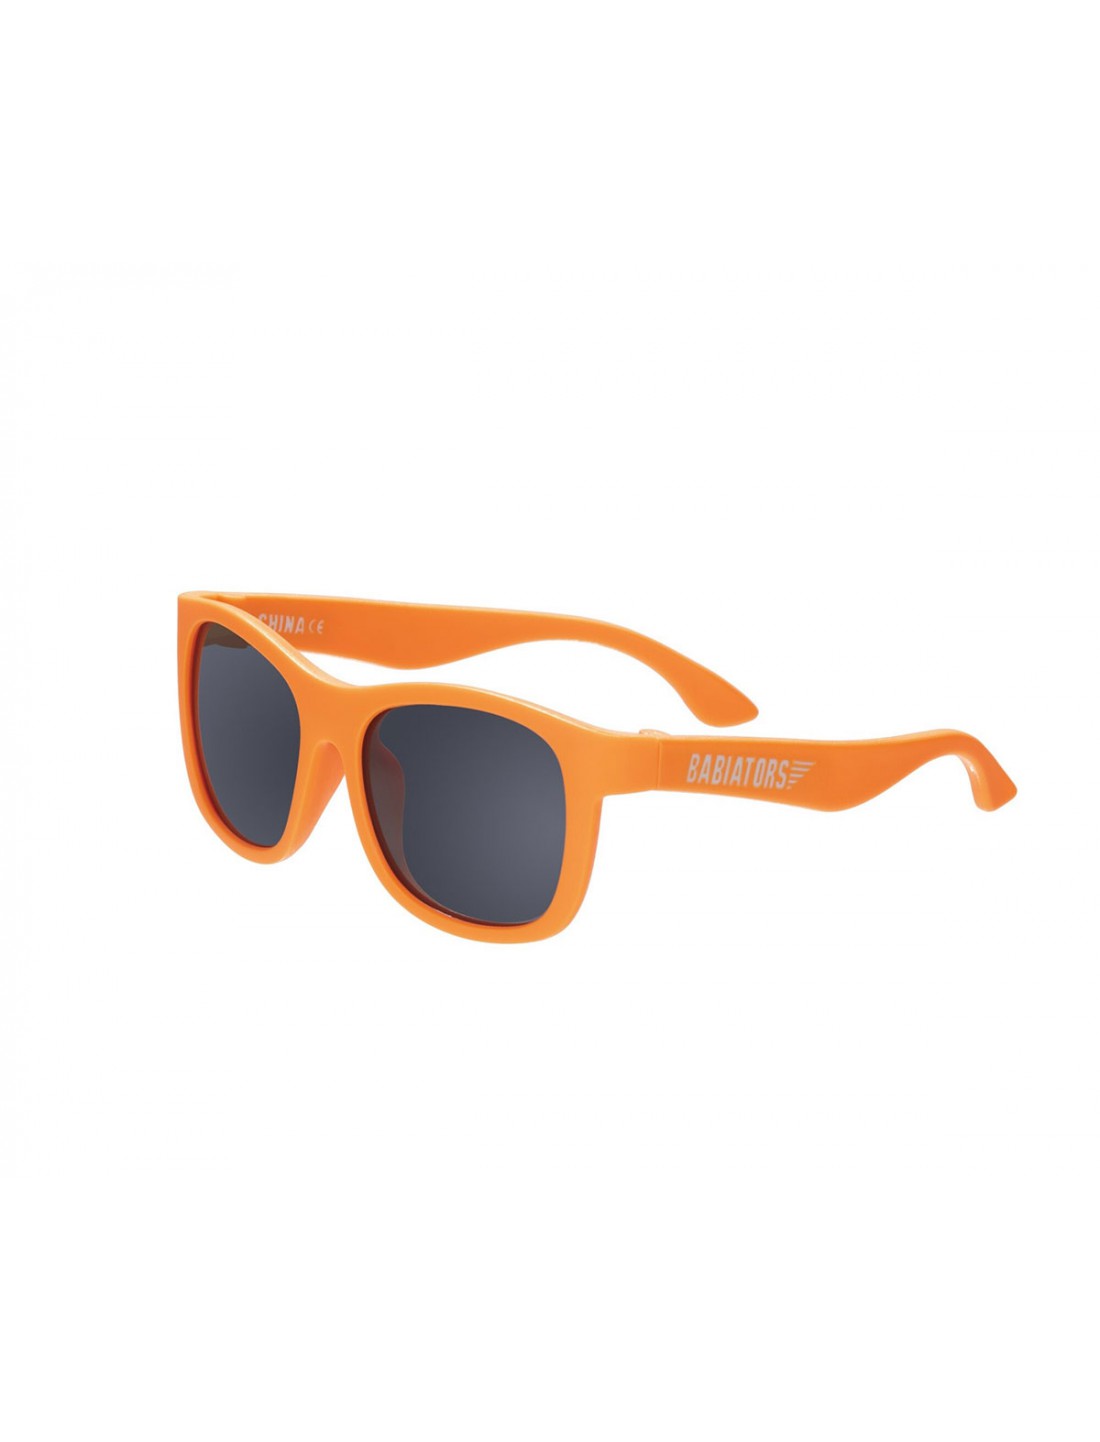 Gafas de Sol Flexibles Navigators Orange Crush. Babiators